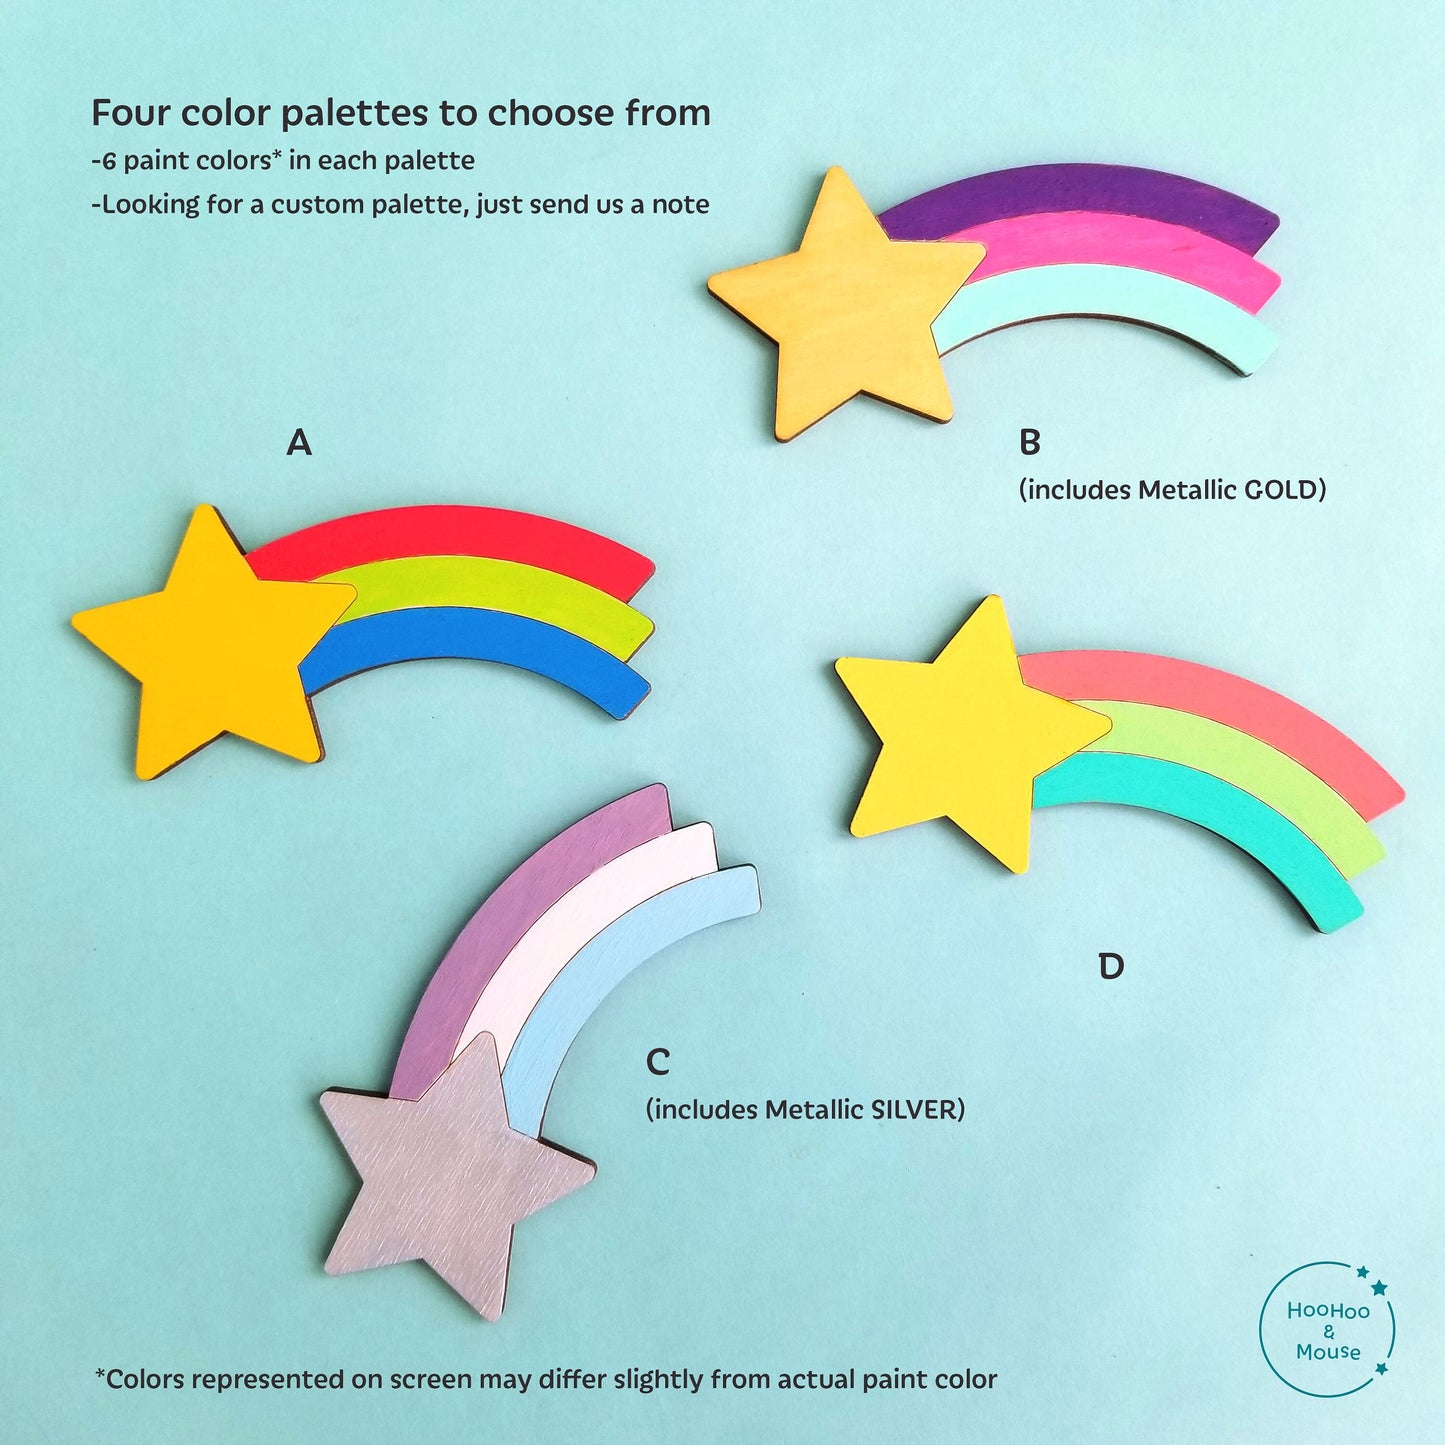 Rainbow Magnets Paint Kit, Set of 4